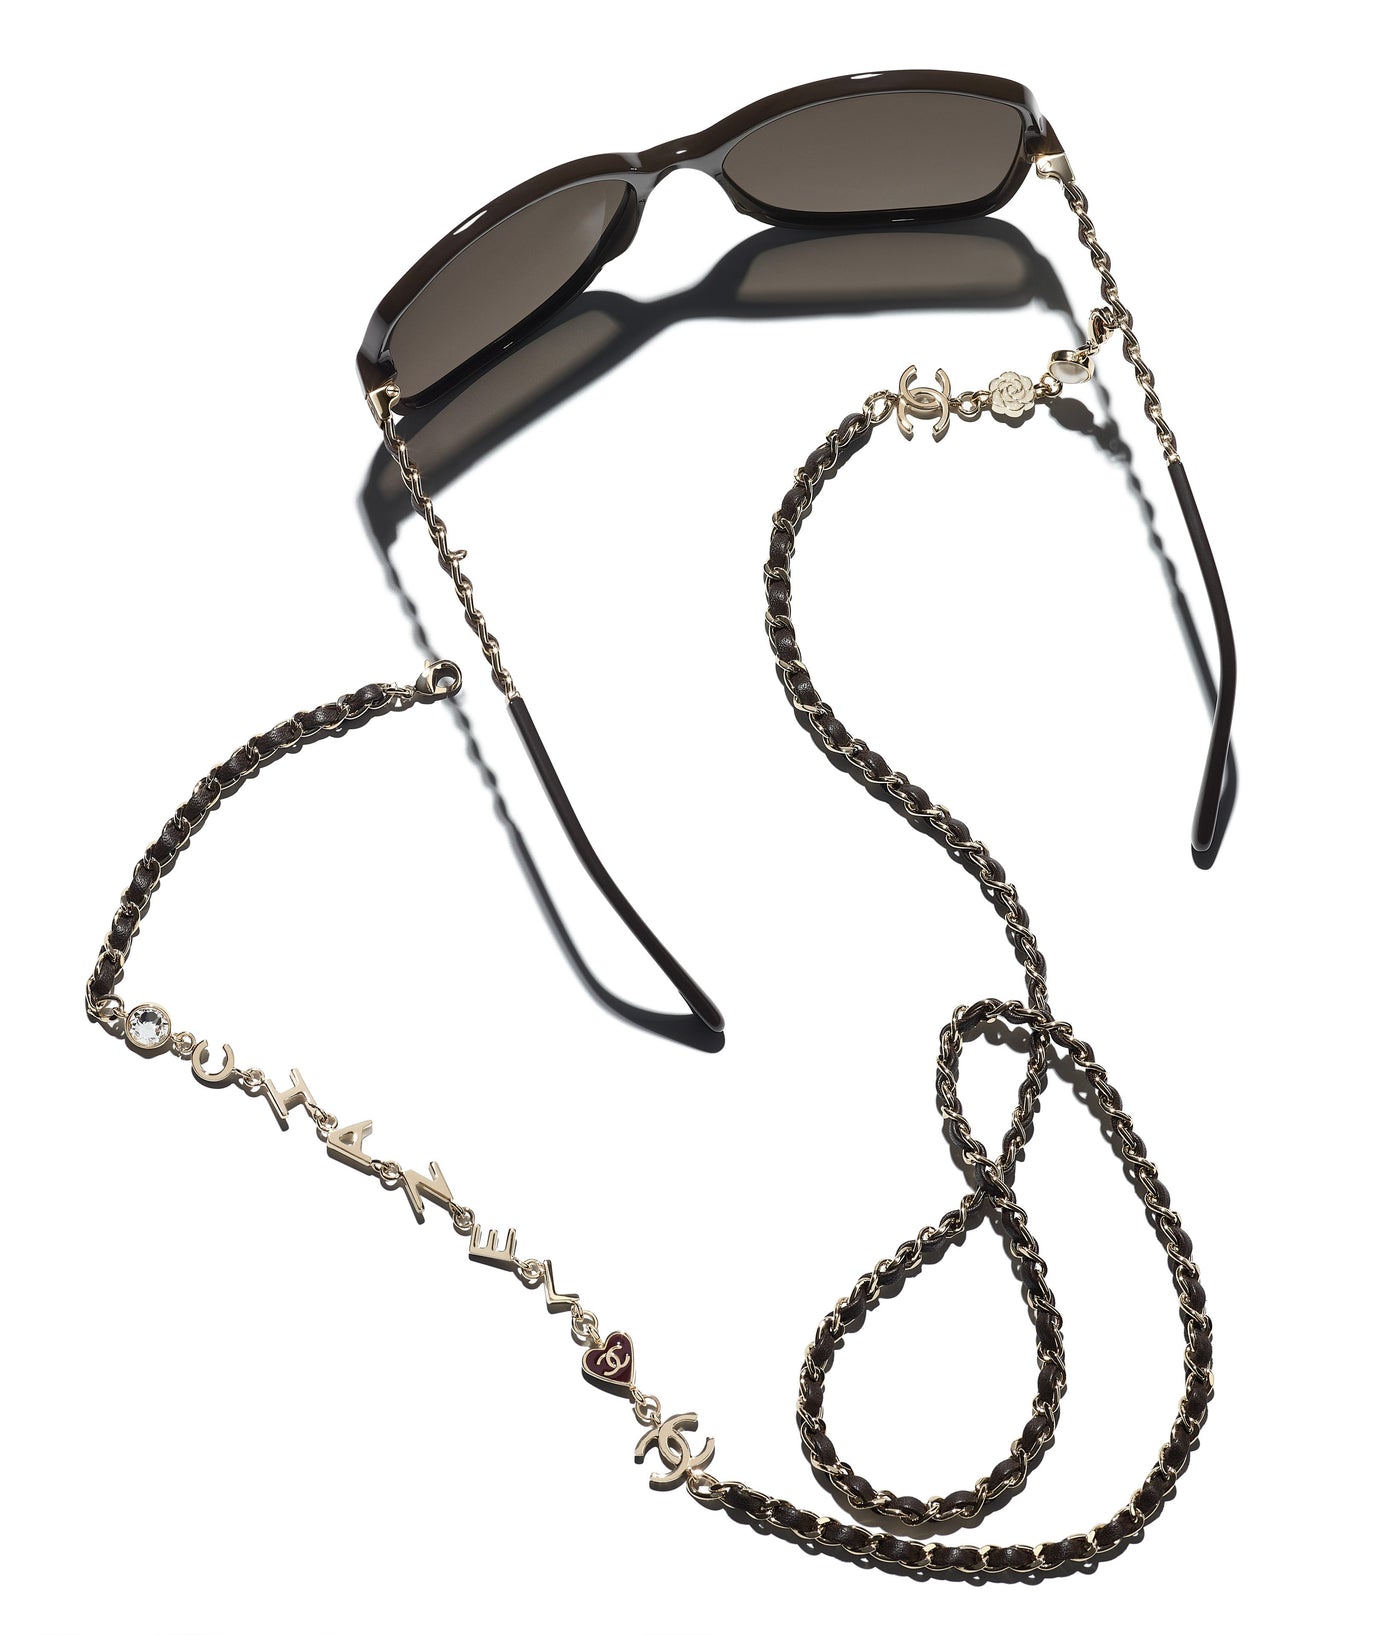 CHANEL Lambskin Square Chain Sunglasses 5210-Q Black, FASHIONPHILE